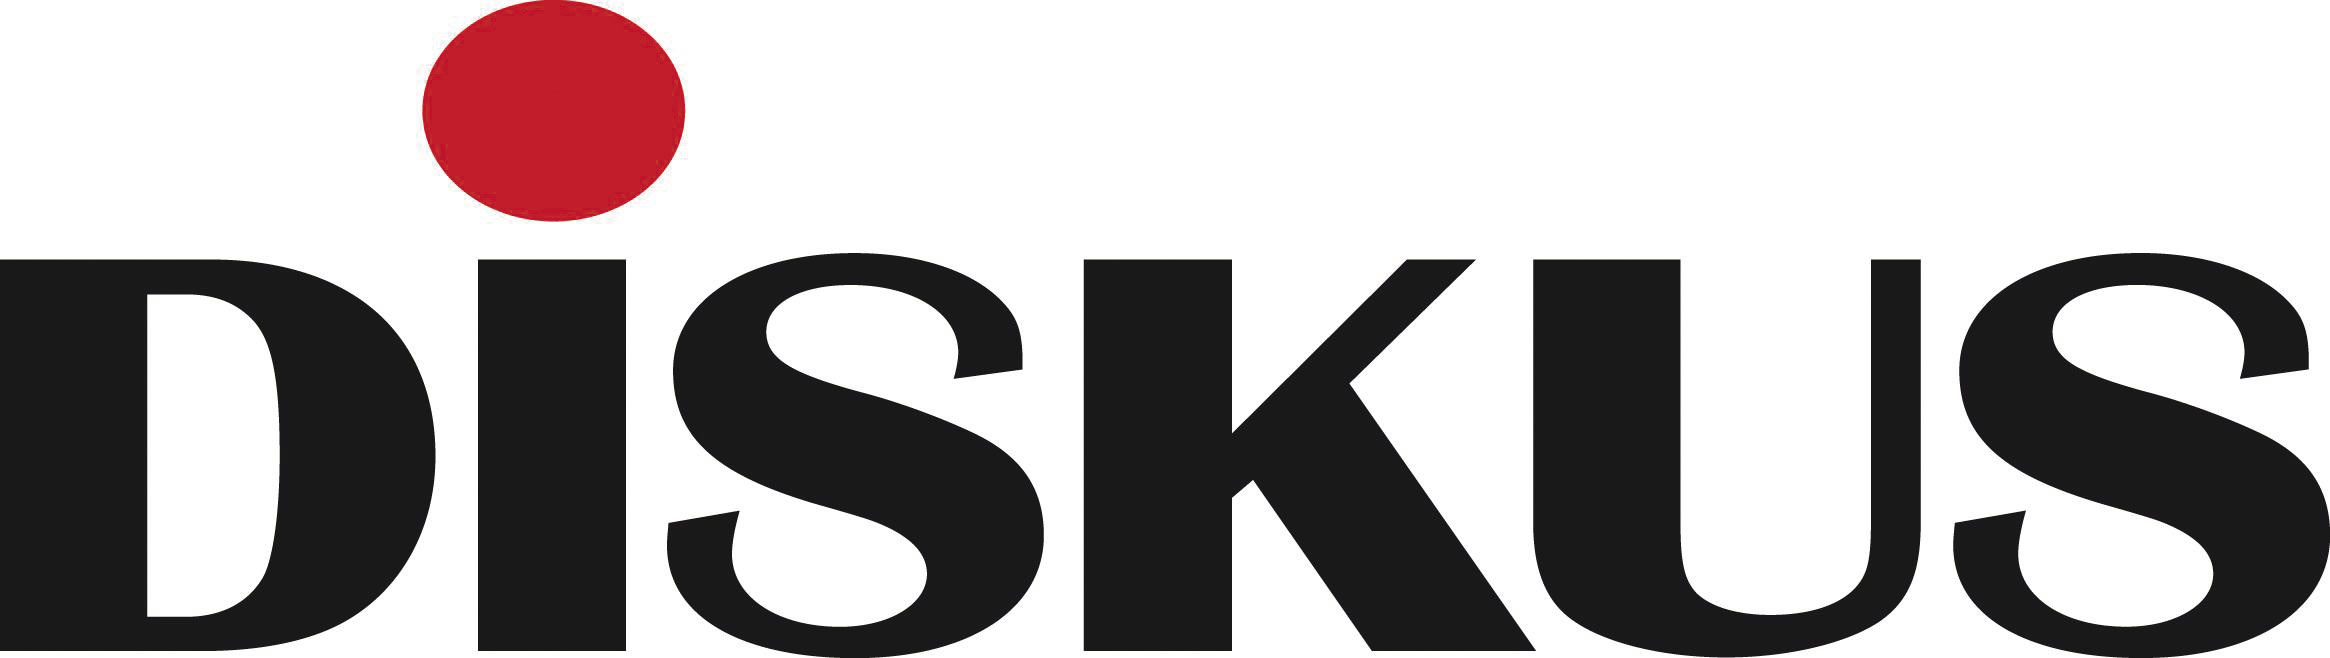 diskus logo